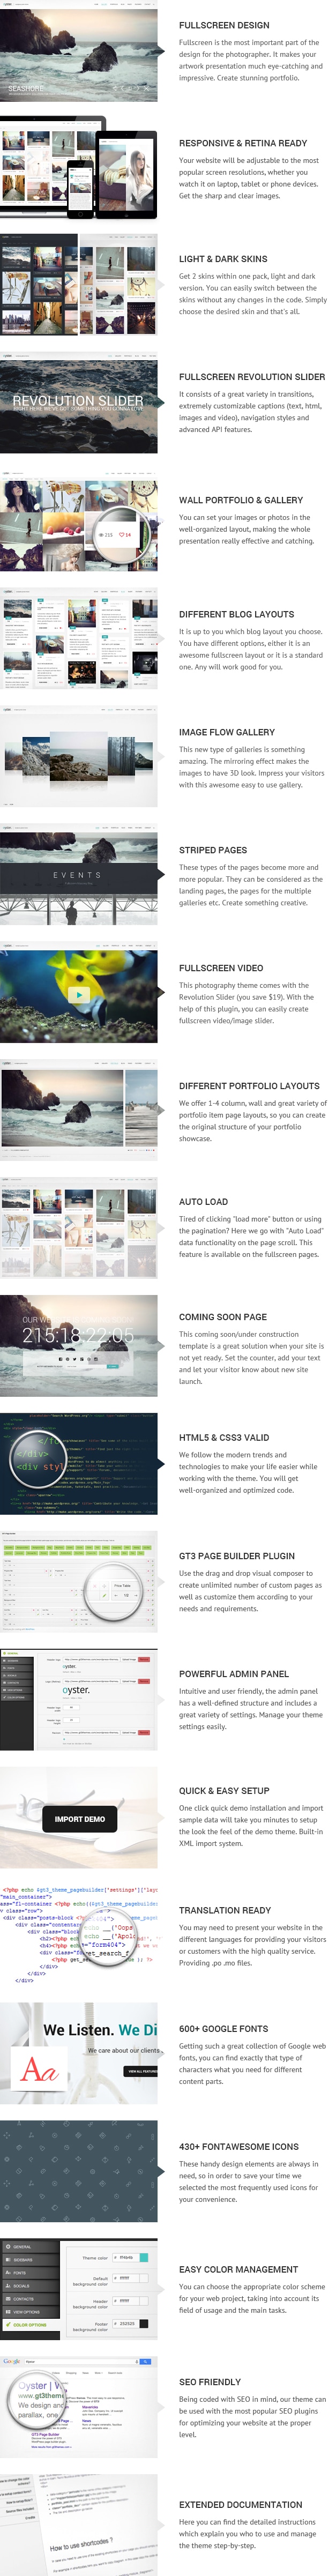 Photography Portfolio WordPress Theme - Oyster - 2